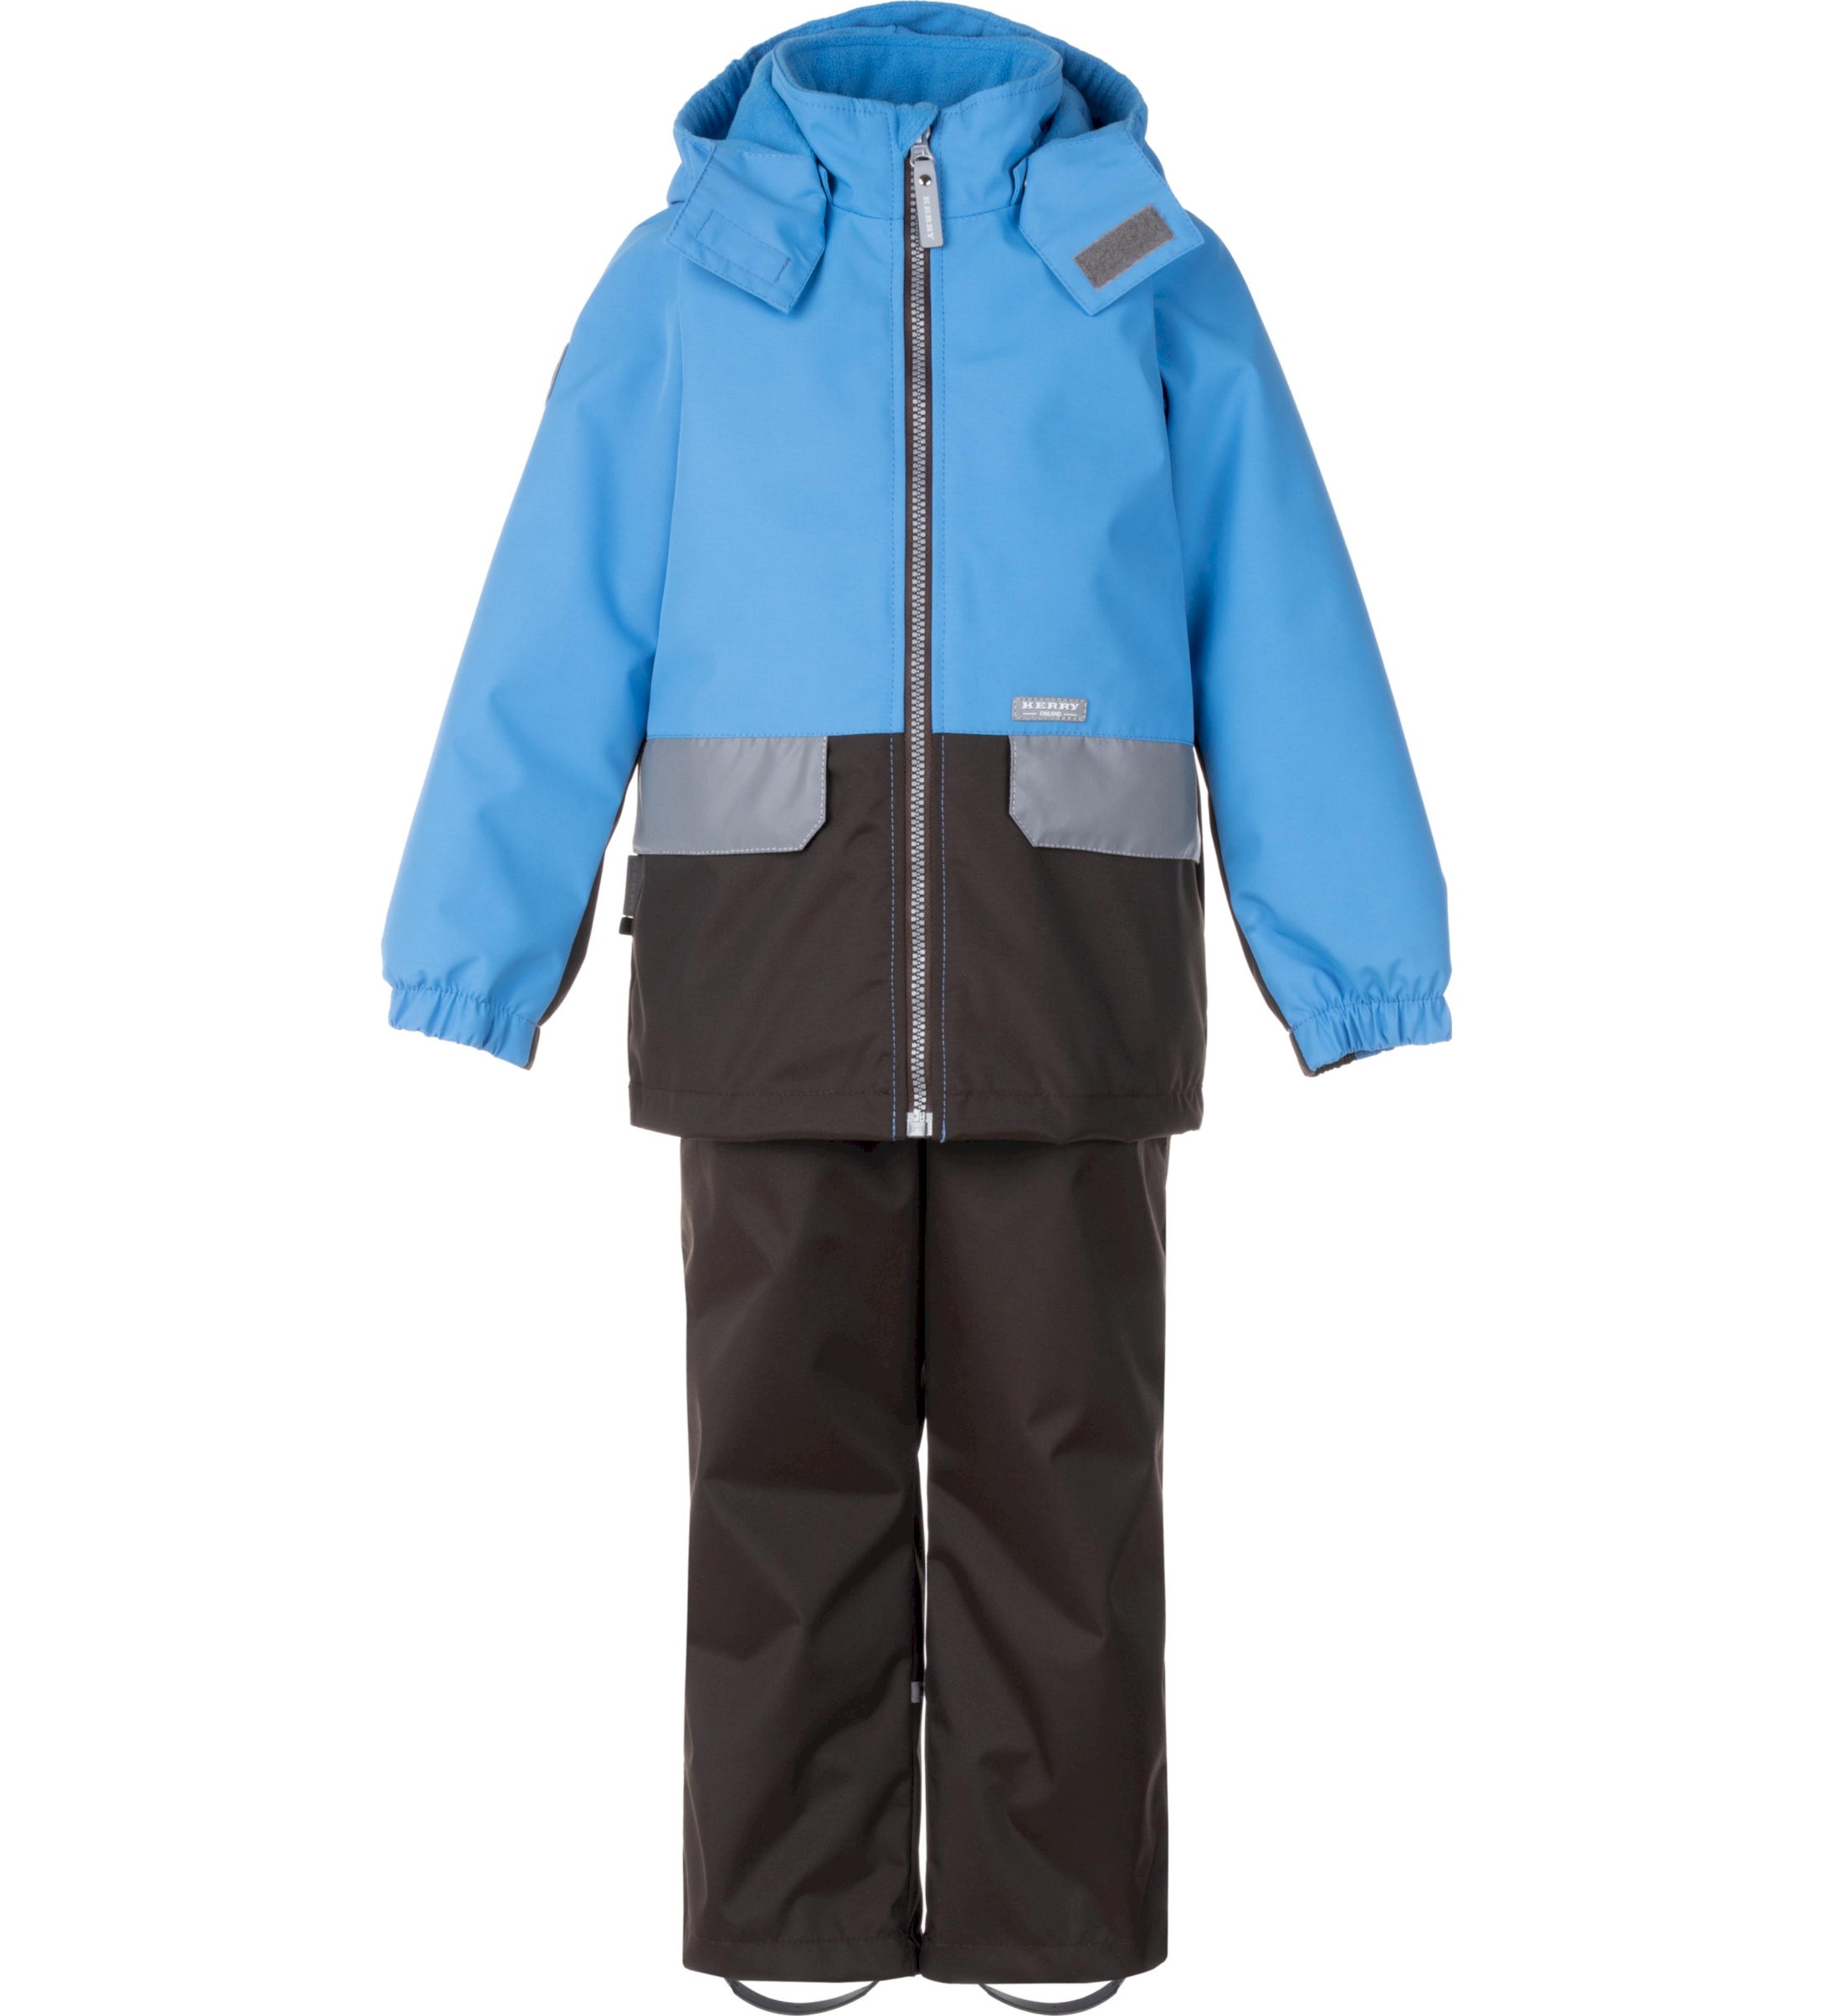 Комплект верхней одежды детский KERRY K24020, голубой; серый, 110